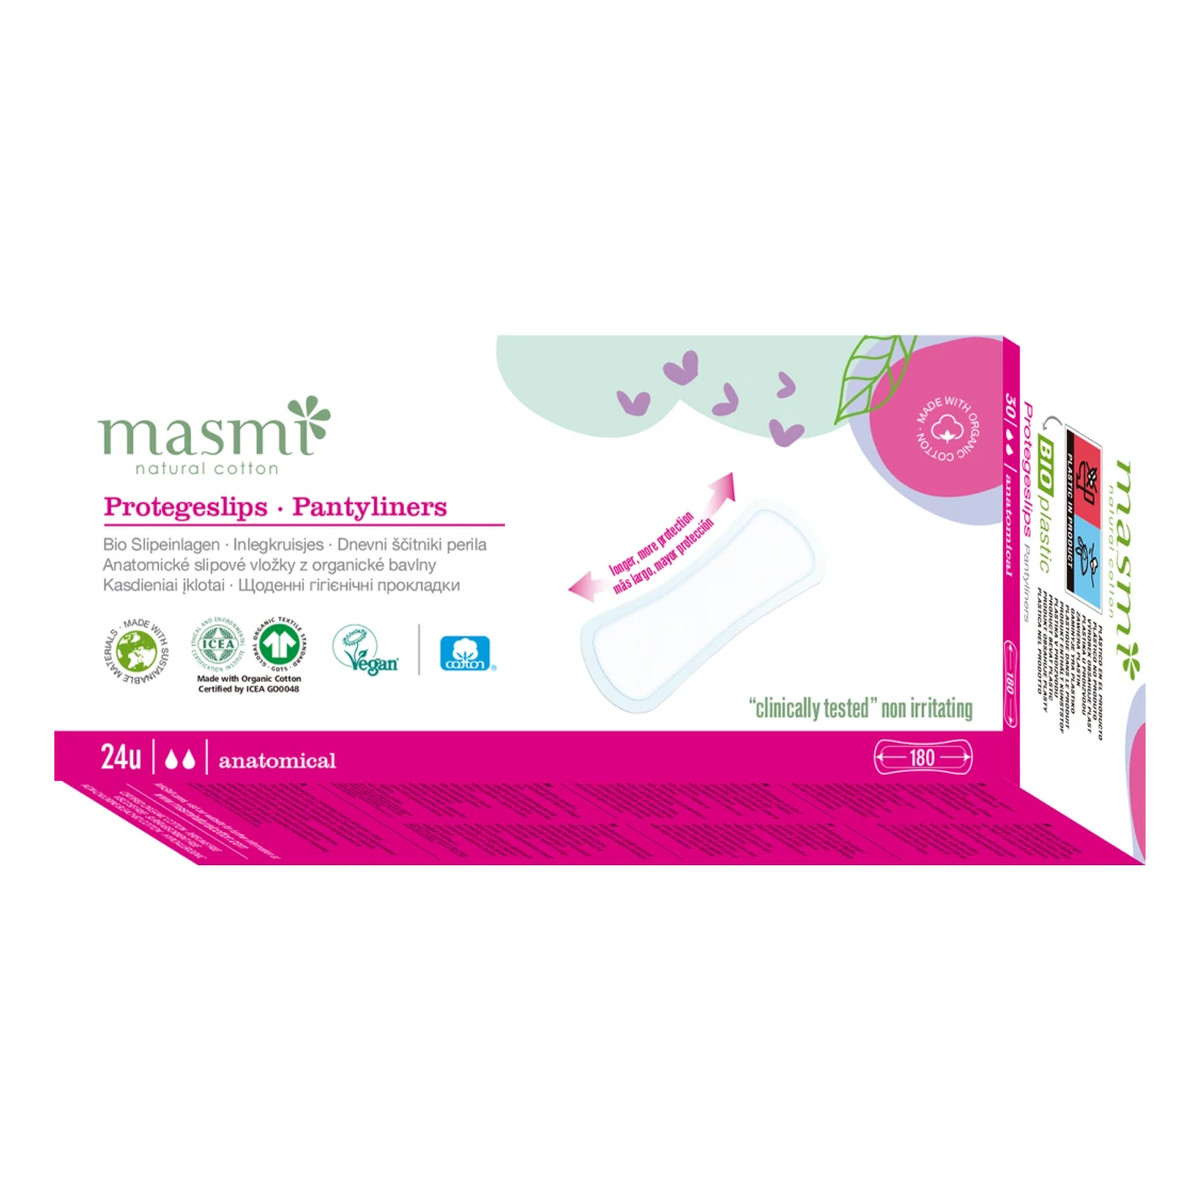 MASMI Wkładki higieniczne o anatomicznym kształcie -100% bawełny organicznej 24szt.